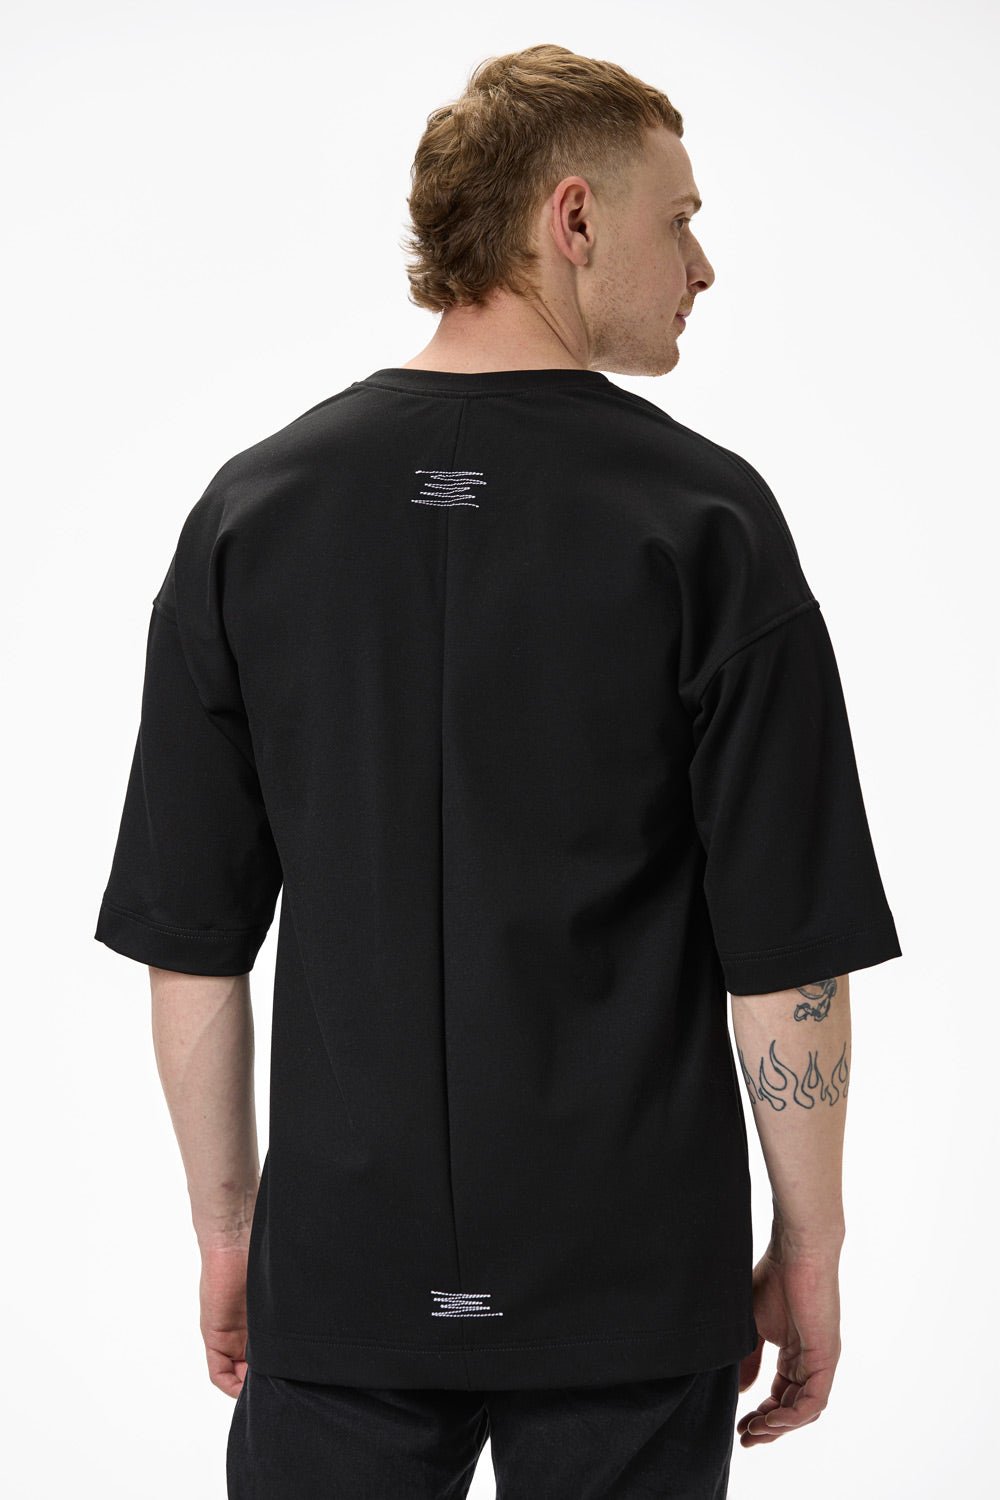 Tricou negru pentru bărbați brodat "V" de la Atelier Hamza, din VIS 70%, PA 25%, EL 5%, textură moale, confort maxim